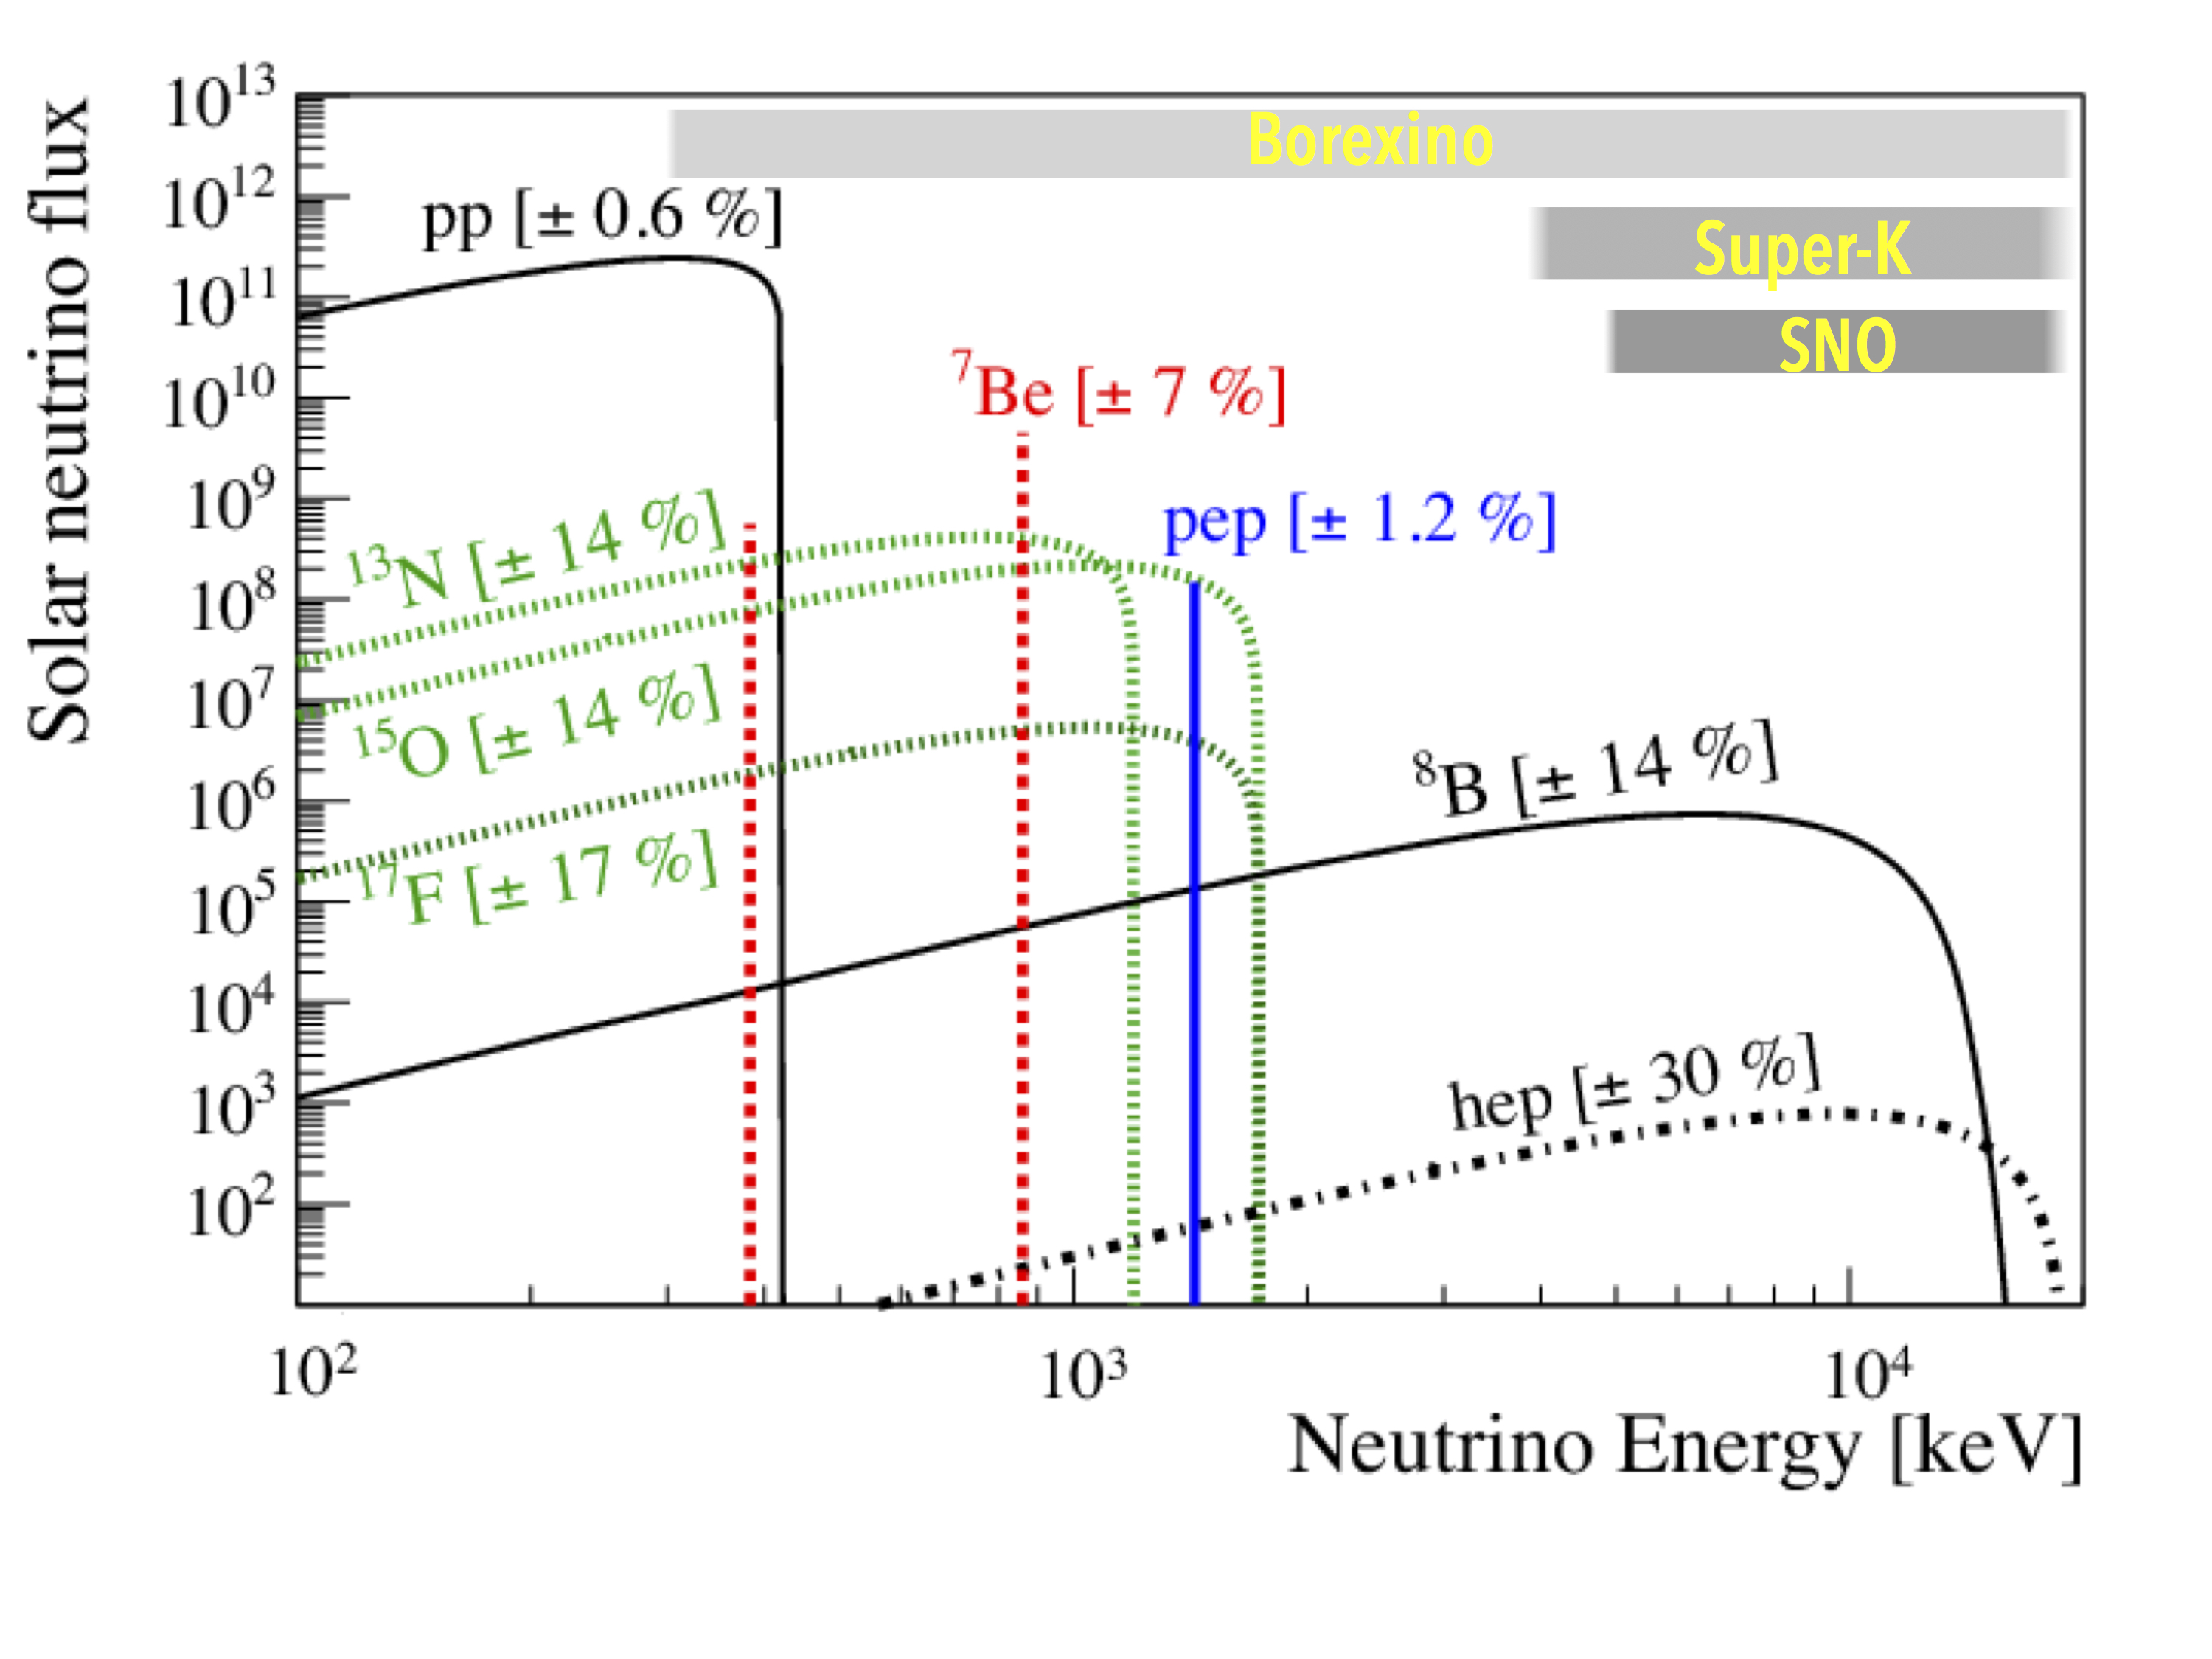 Energia w keV emitowana przez neutrina słoneczne pochodzące z reakcji jądrowych takich jak: proton-proton (pp), proton-elektron-proton (pep), 7Be, 8B i innych. Szare pasma u góry po prawej reprezentują zakres energii neutrin (w keV), które mogą zarejestrować następujące teleskopy neutrinowe: Borexino, Super-Kamiokande i SNO (Sudbury Neutrino Observatory). Proszę zauważyć, że tylko teleskop Borexino może zaobserwować wszystkie rodzaje neutrin produkowanych przez Słońce (na rysunku zaznaczono ciągłymi liniami oczekiwane strumienie neutrin słonecznych w skali logarytmicznej dla modelu teoretycznego Słońca). Teleskopy Super-Kamiokande i SNO mogą zaobserwować tylko ~0.2% całkowitej ich liczby. Źródło: Wikipedia